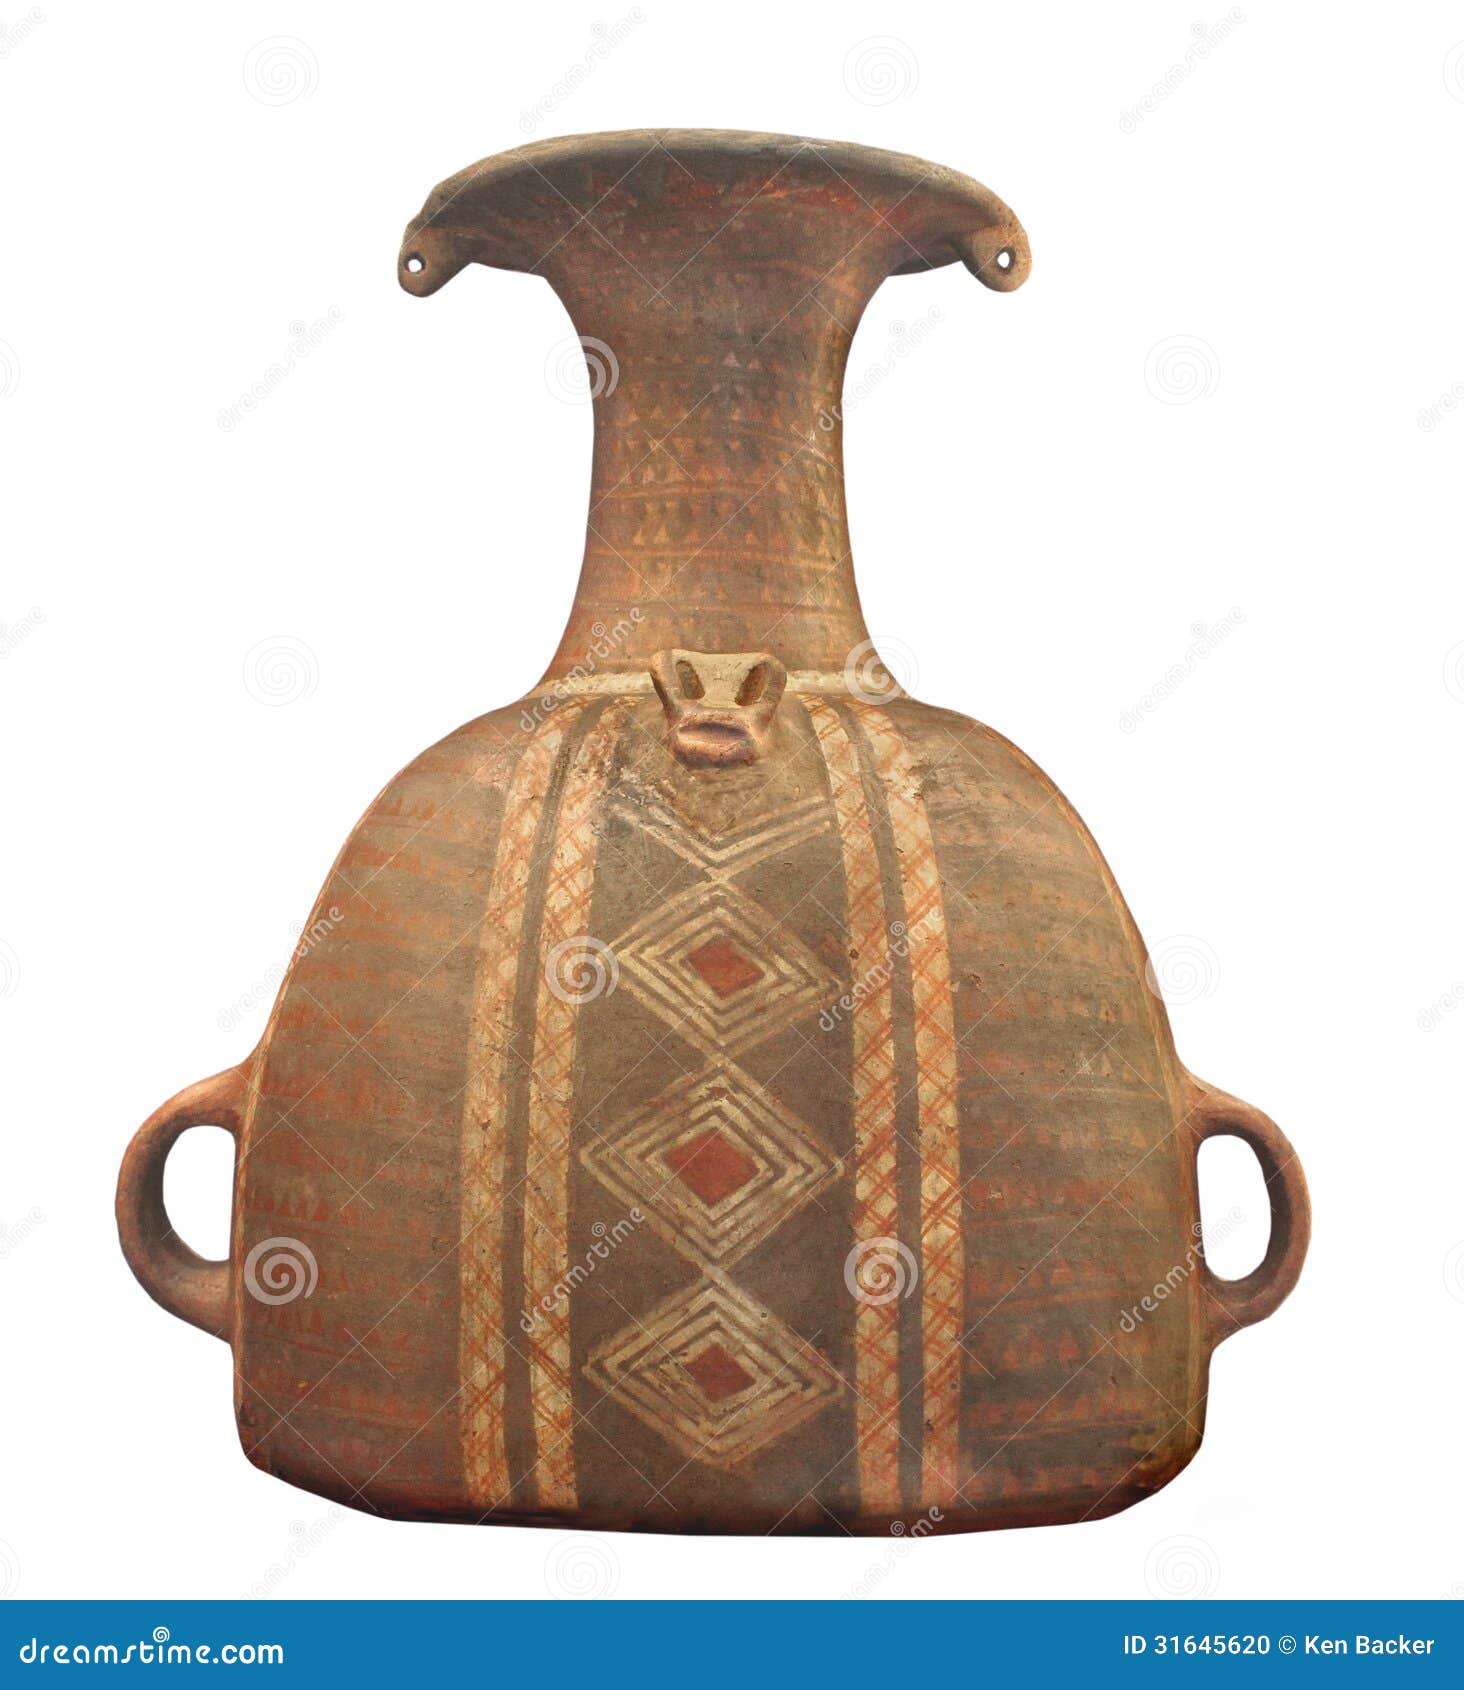 ancient inca pottery jar .